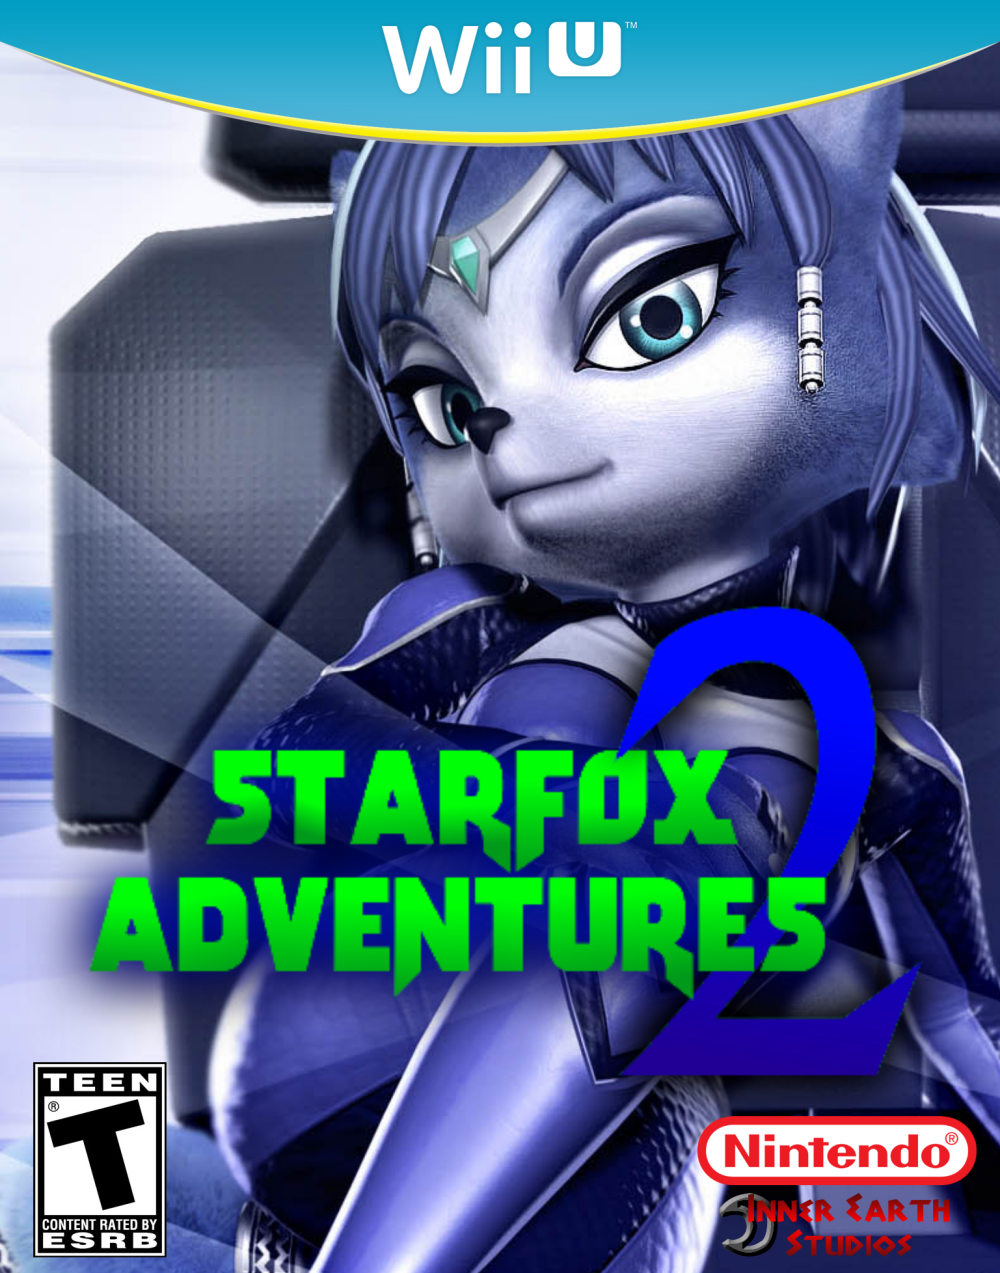 A new Star Fox game is on its way to the Wii U, details